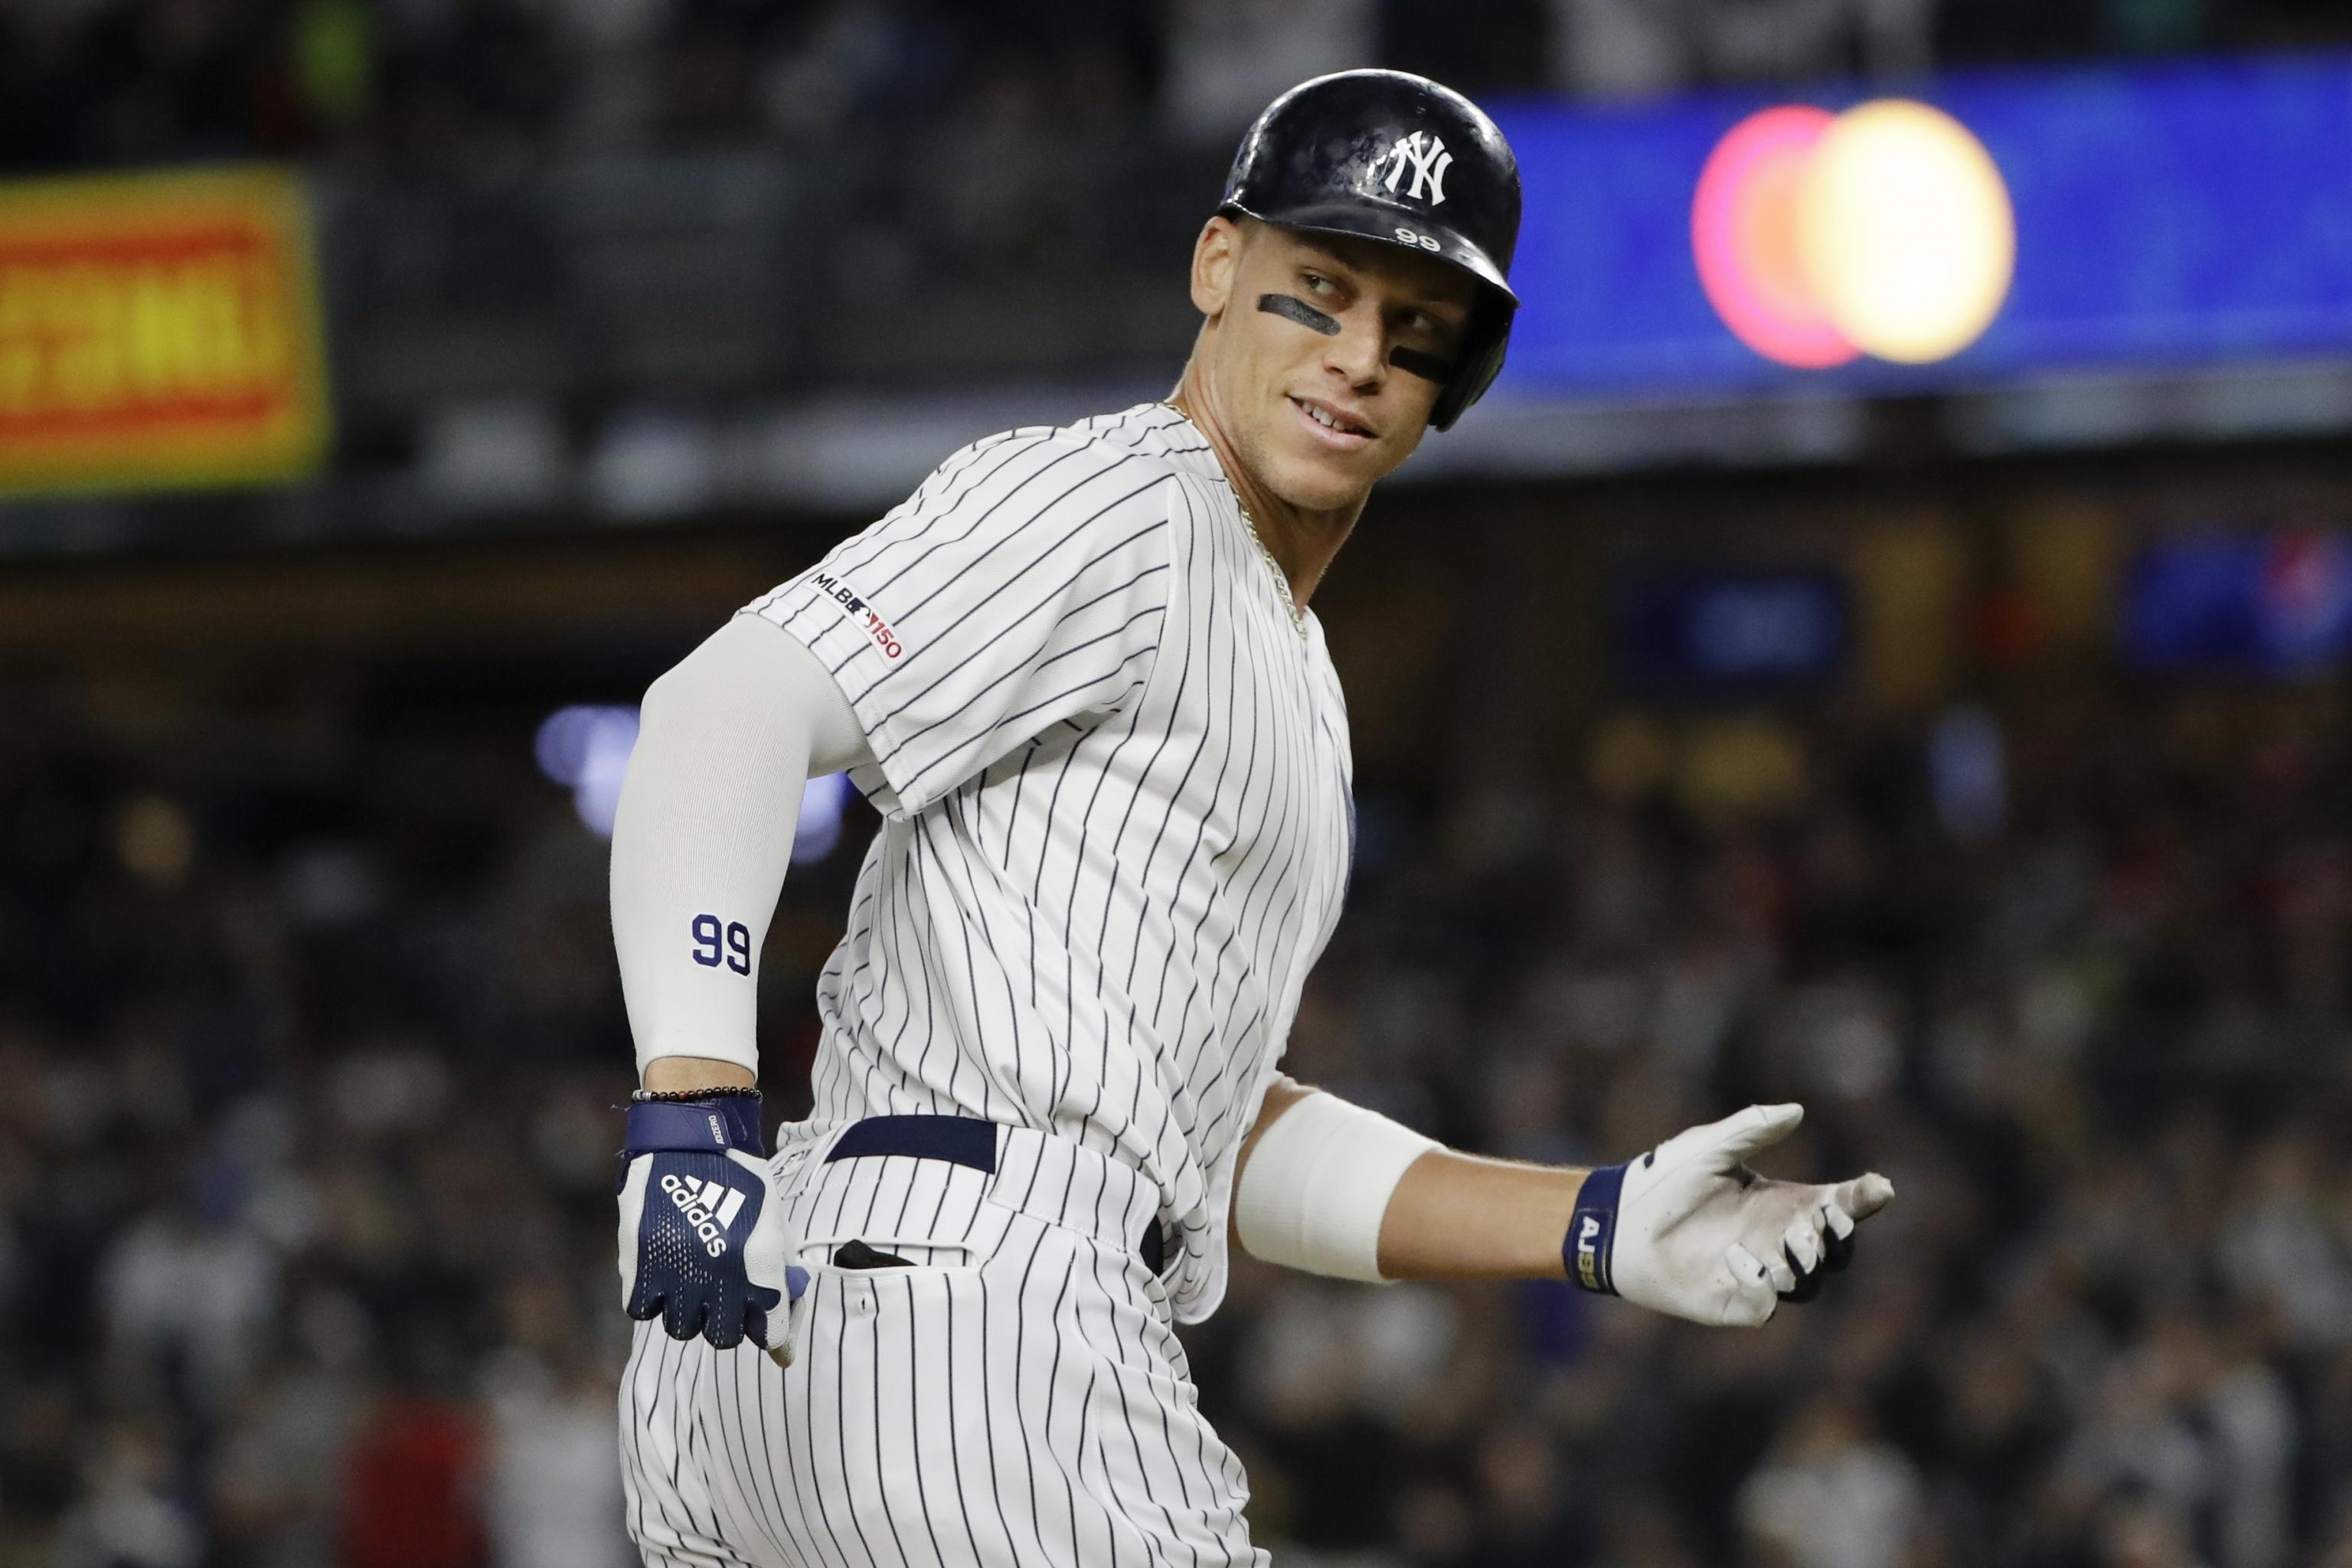 Aaron Judge's No. 99 tops best-selling MLB jerseys of 2017